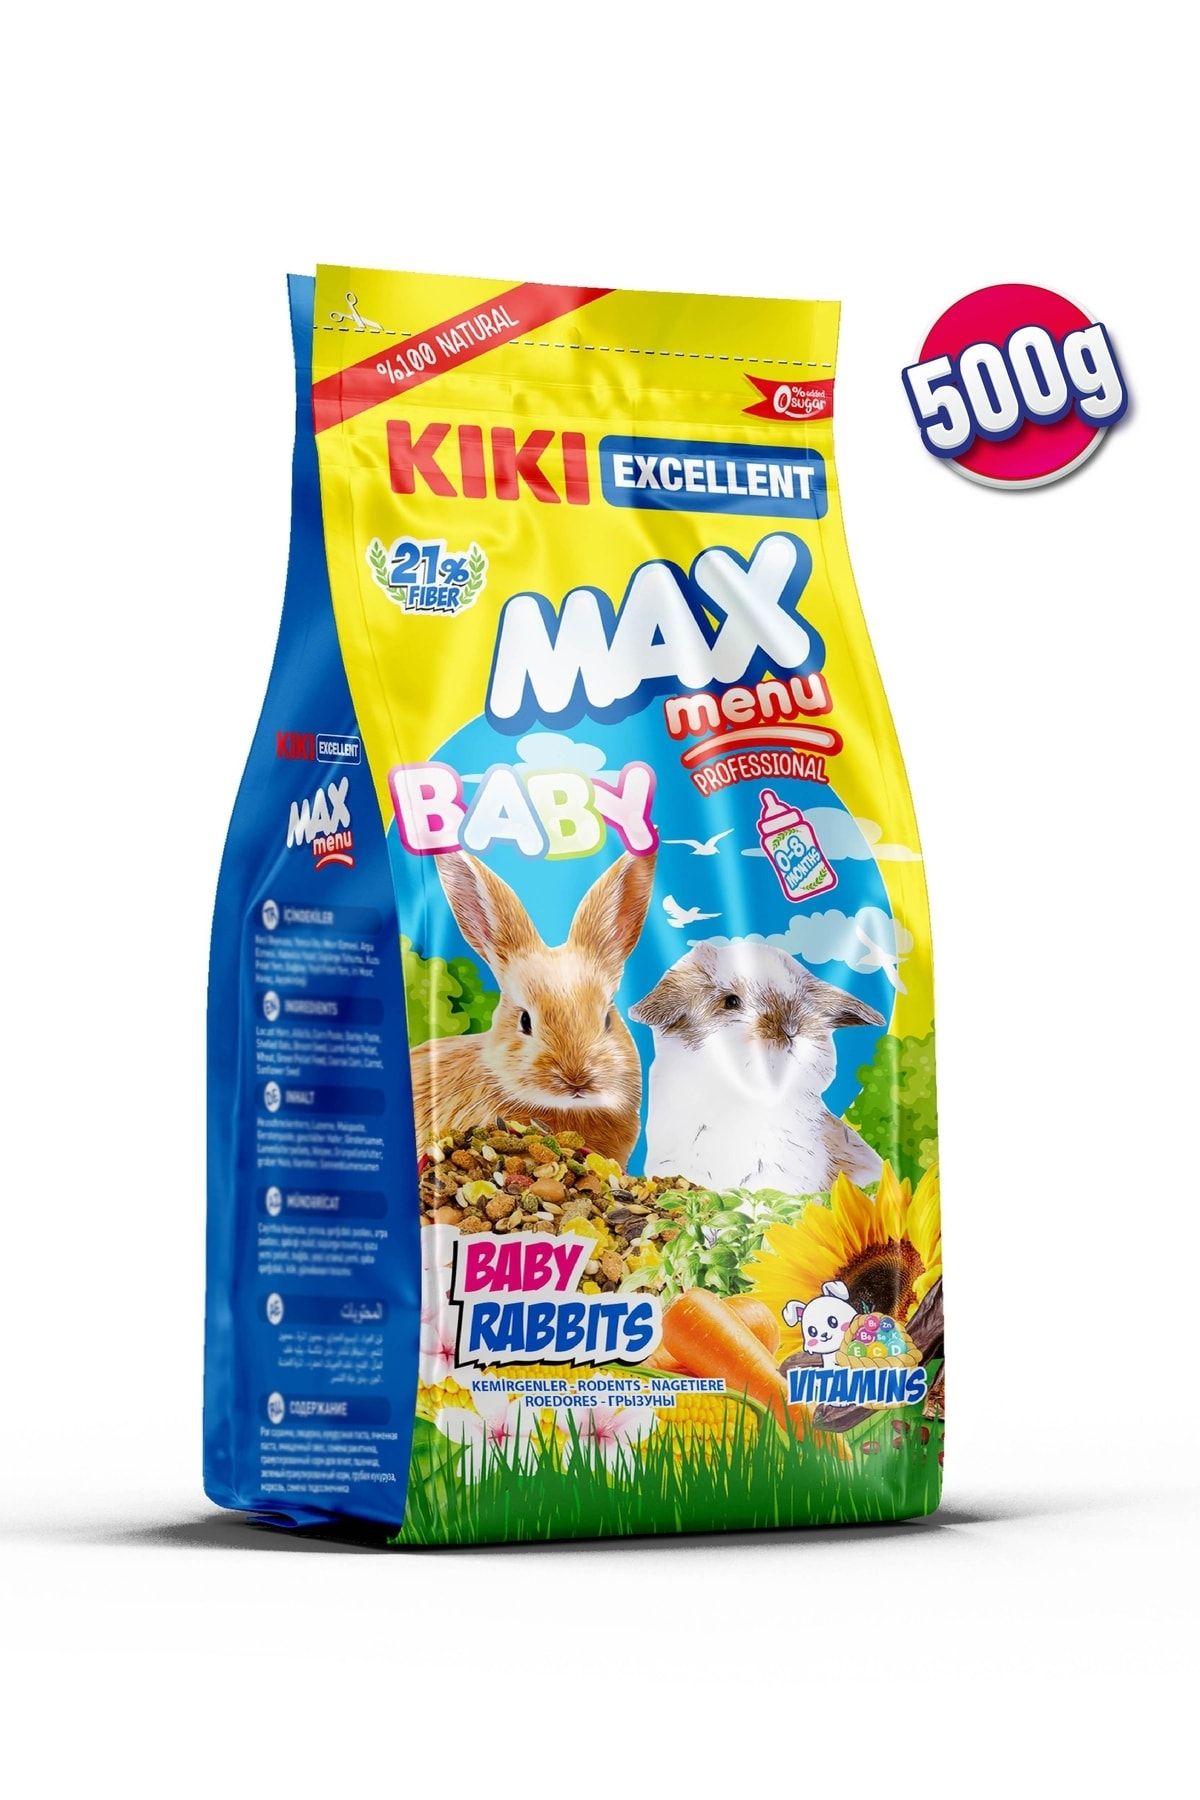 Kiki Excellent Kemirgen Max Menu Baby Rabbits Yavru Tavşan Yemi 500 Gr. Kg303